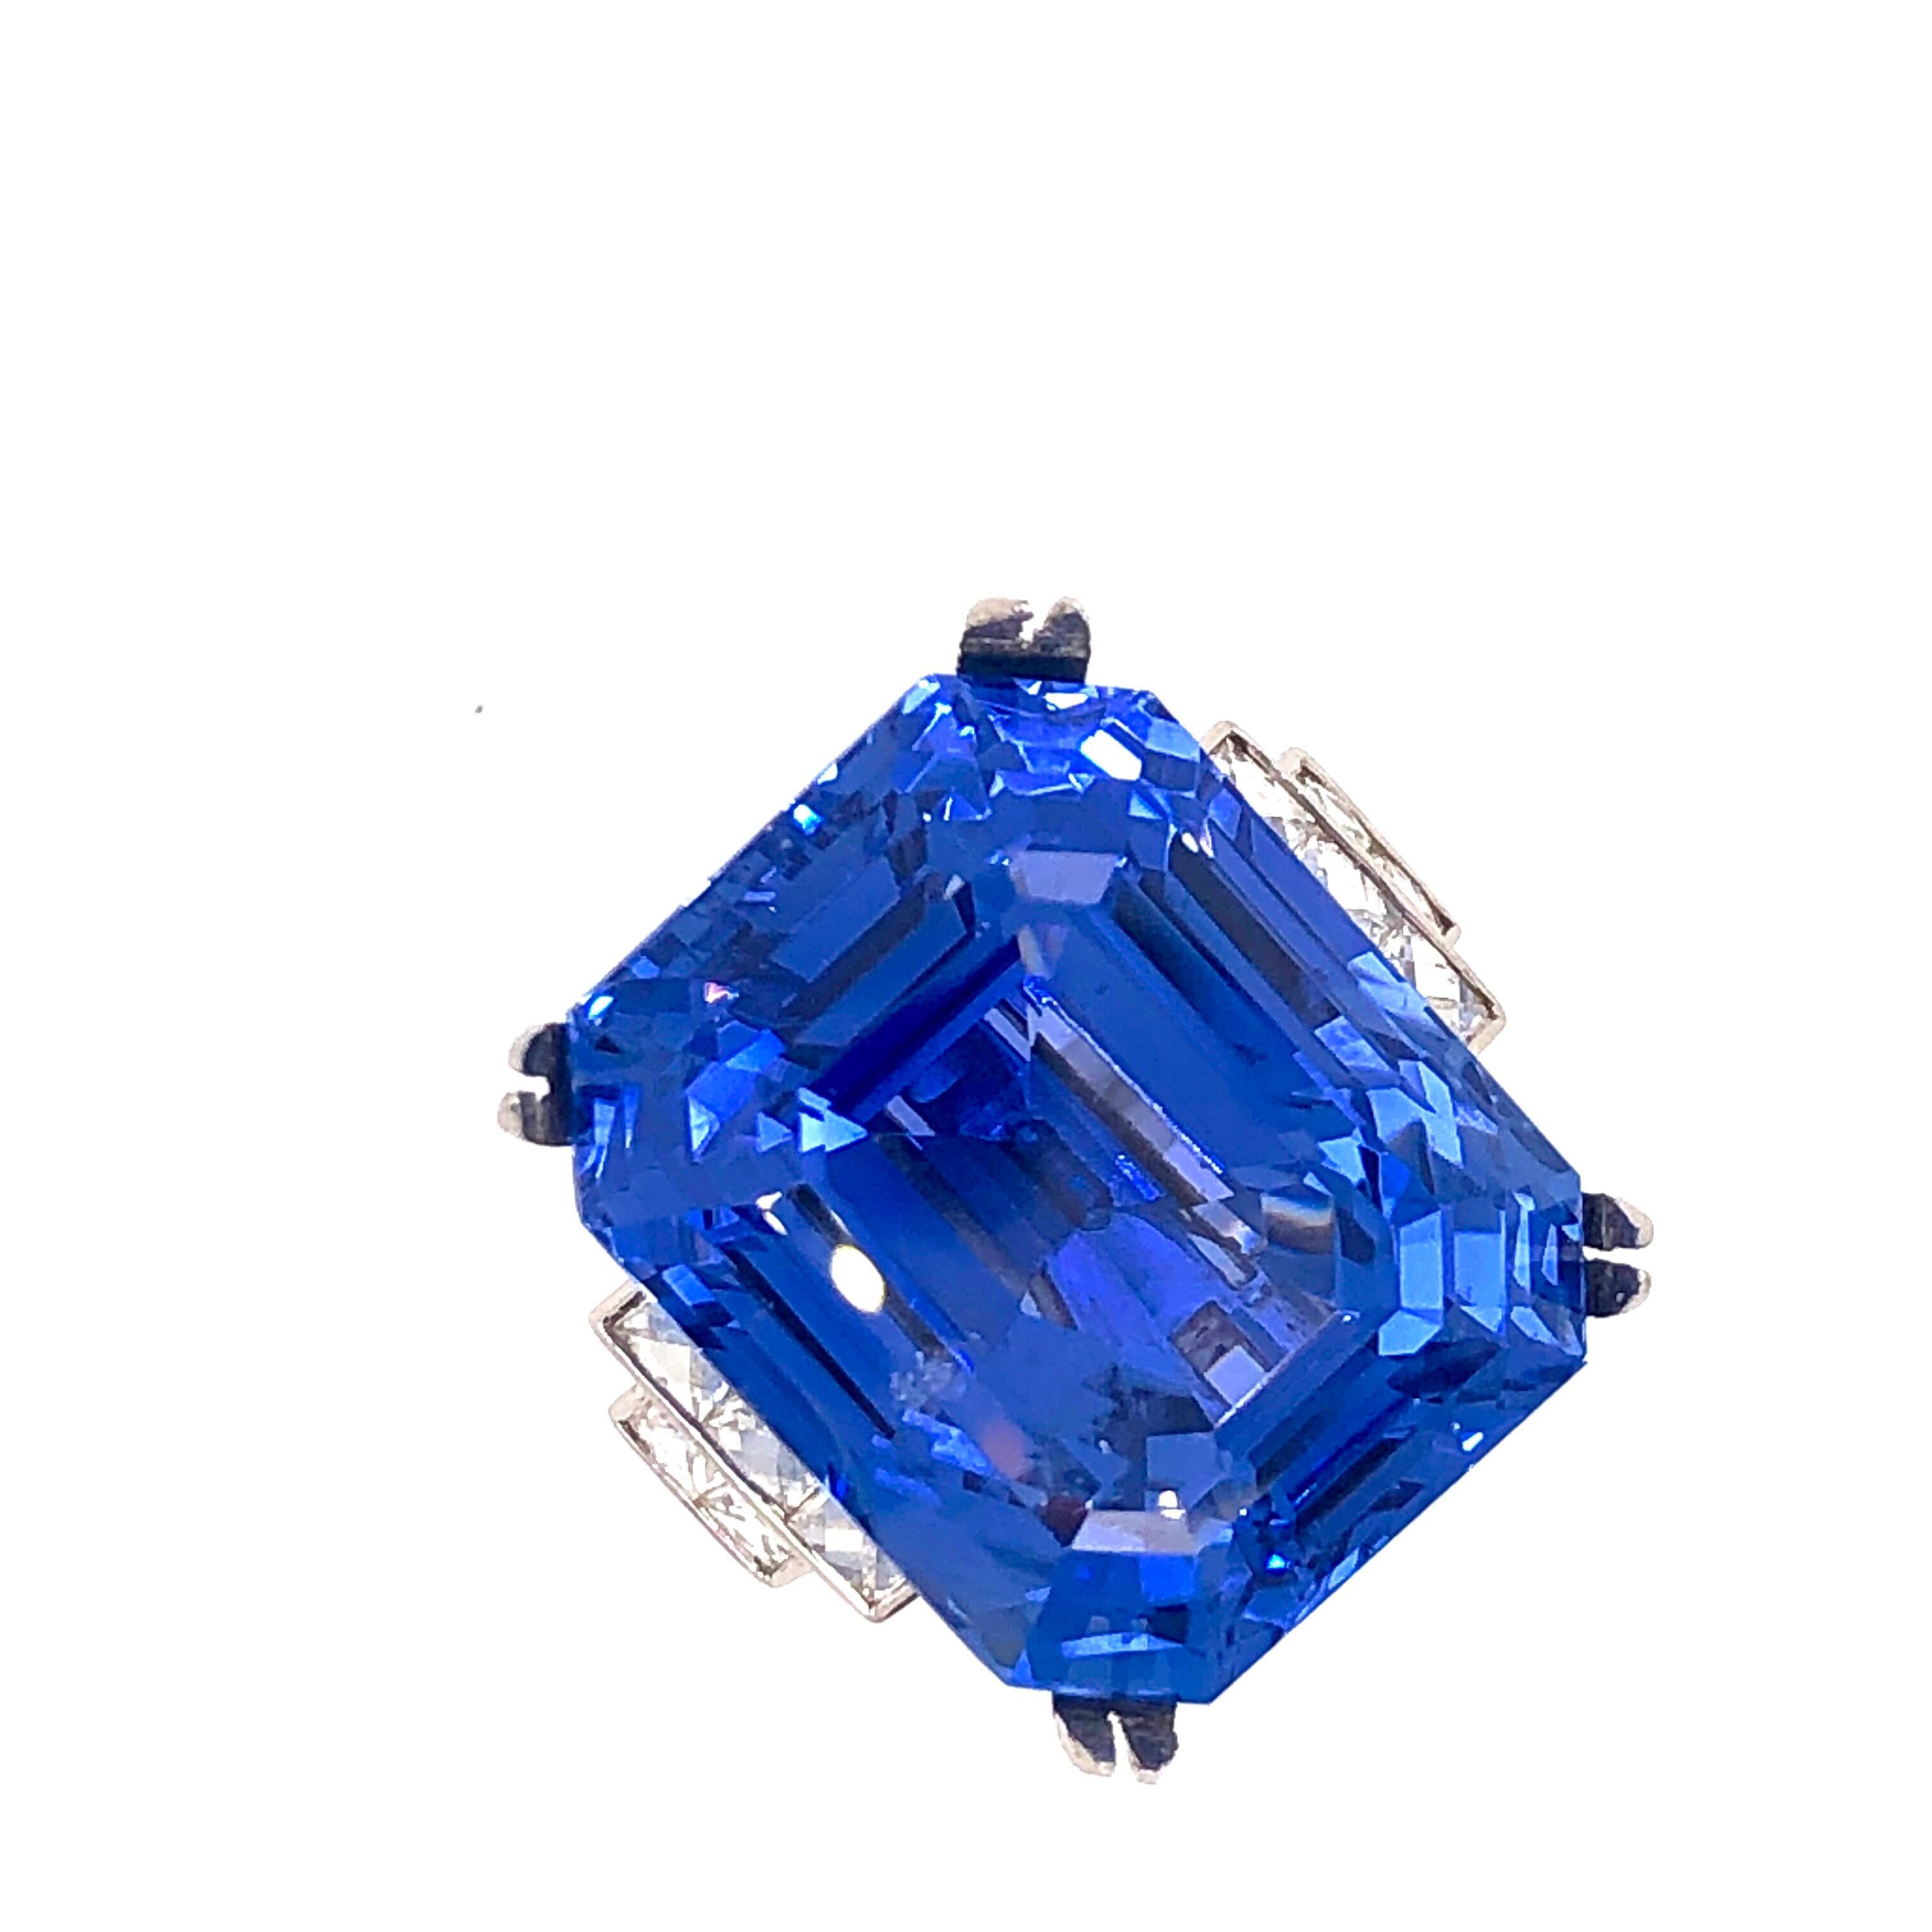 Dieser von Emilio Jewelry entworfene Ring ist eine ausgezeichnete Investition! Präsentiert wird ein Ceylon-Saphir im Smaragdschliff mit einem Gewicht von 43,02 Karat, der von Gubelin und GIA als unbehandelter, UNGEHEIZTER Ceylon-Saphir aus Sri Lanka